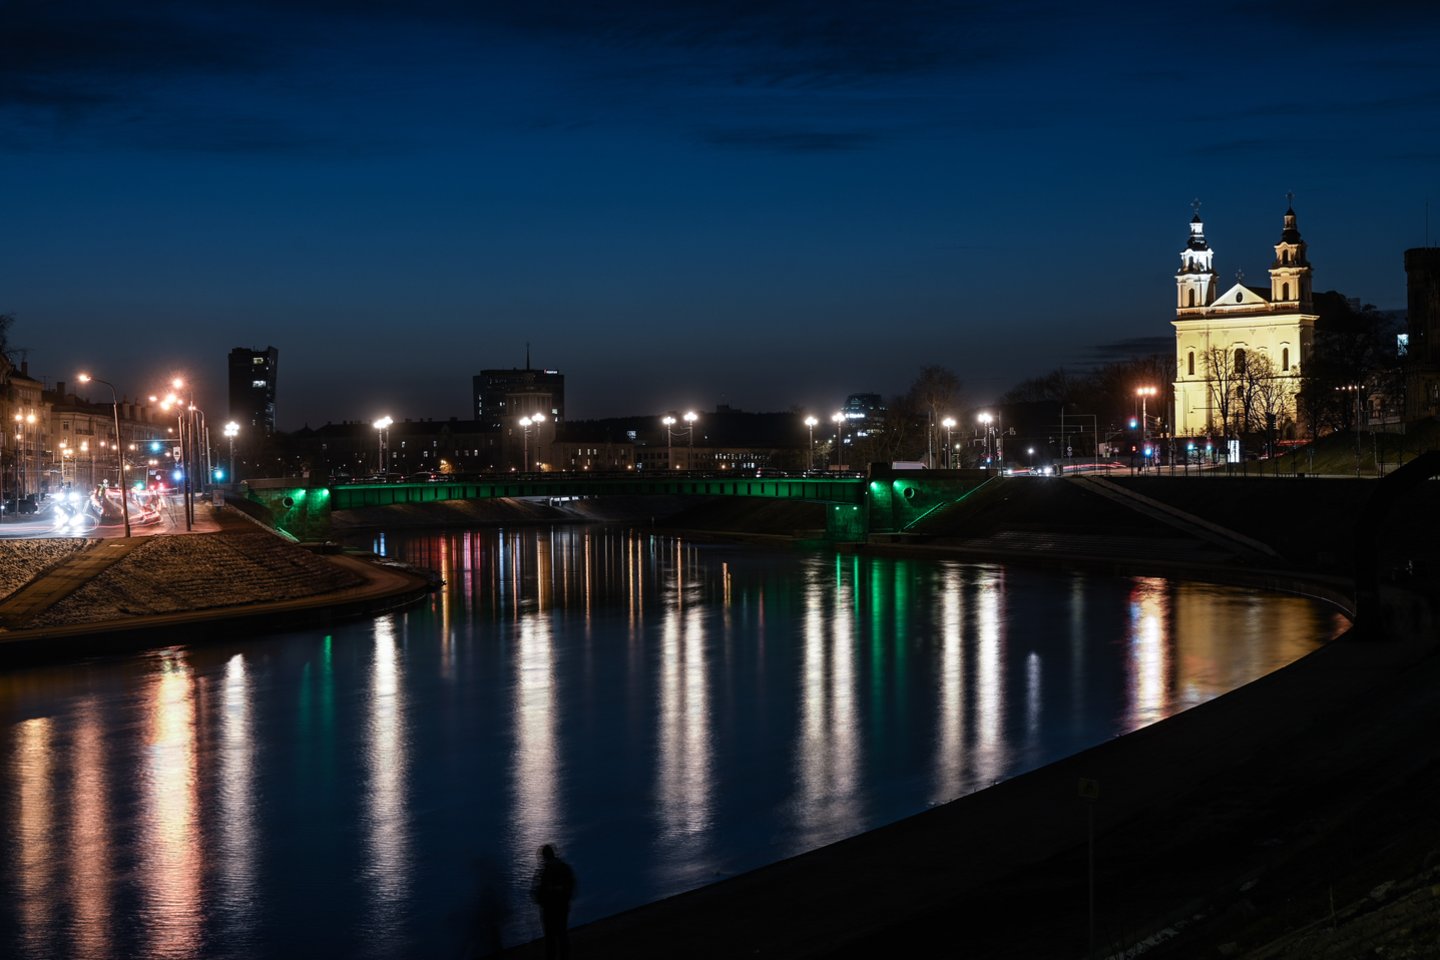  Kovo 11-osios išvakarėse Vilnius nusidažė trispalvės spalvomis.<br> V.Skaraičio nuotr.